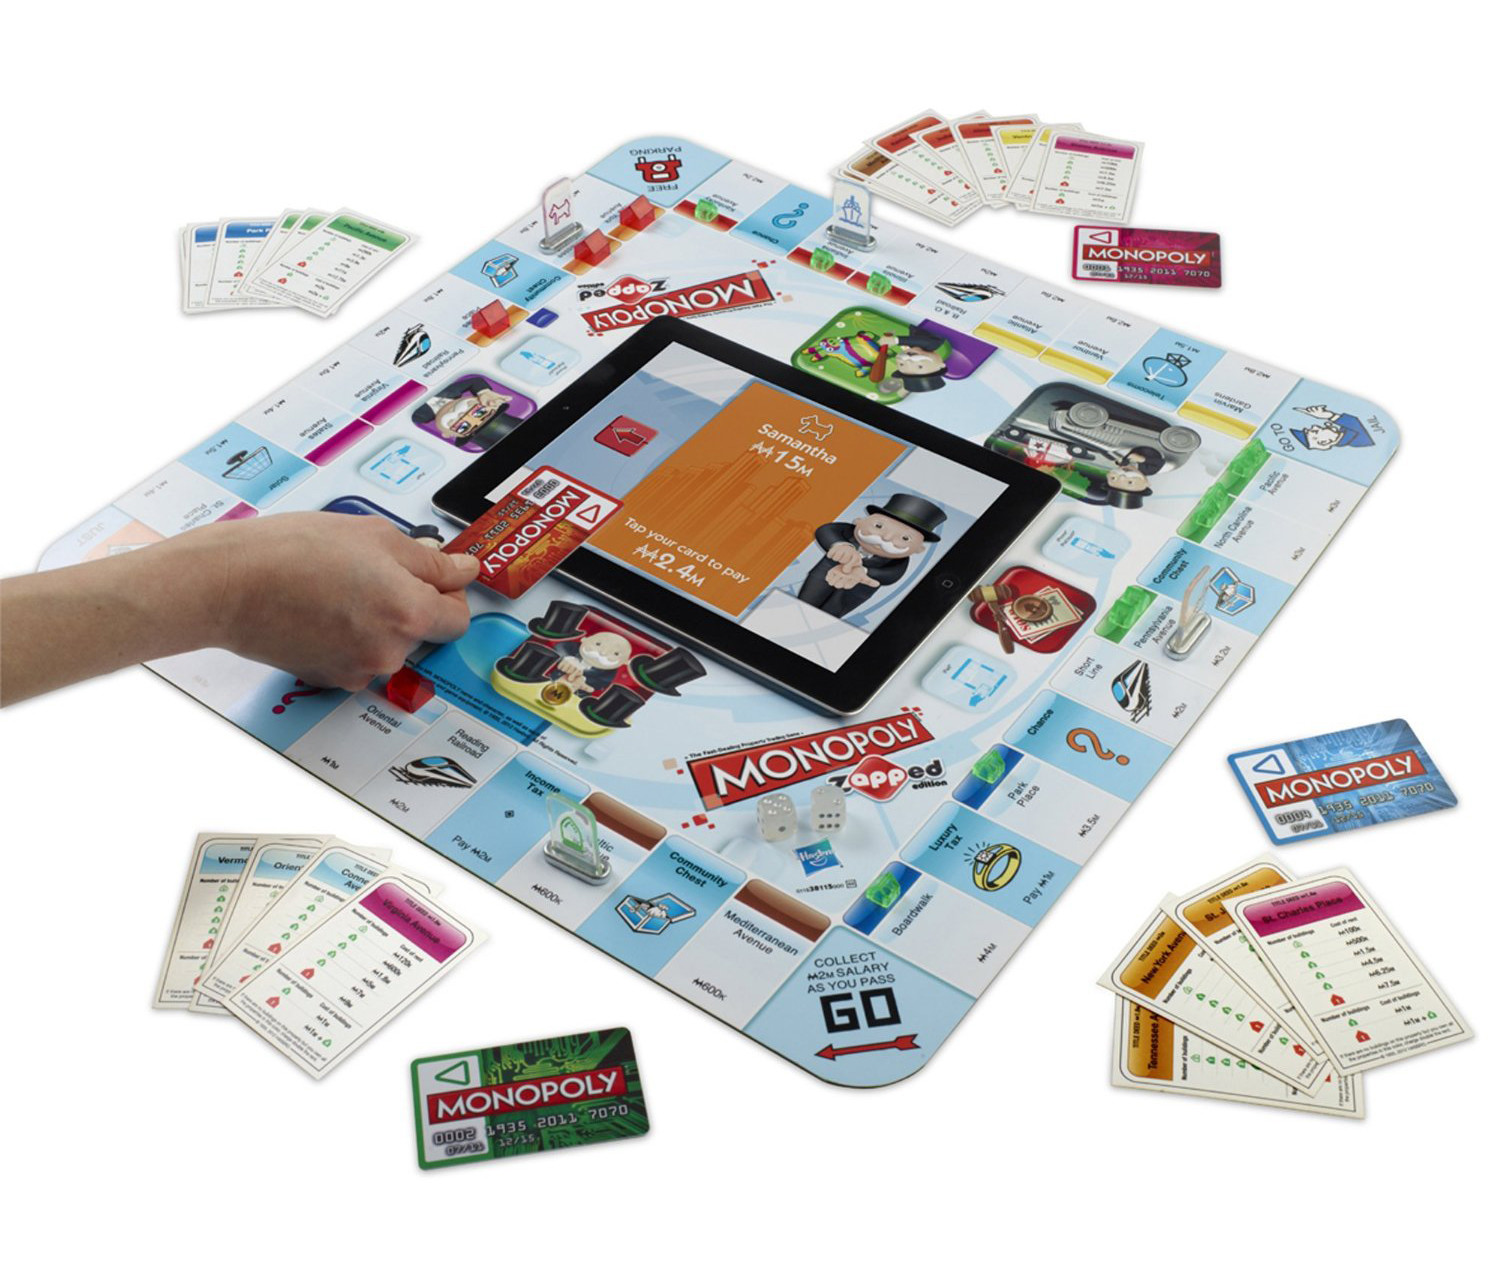 Monopoly Zapped : jeu de Société Famille interactif avec iPad, Monopoly